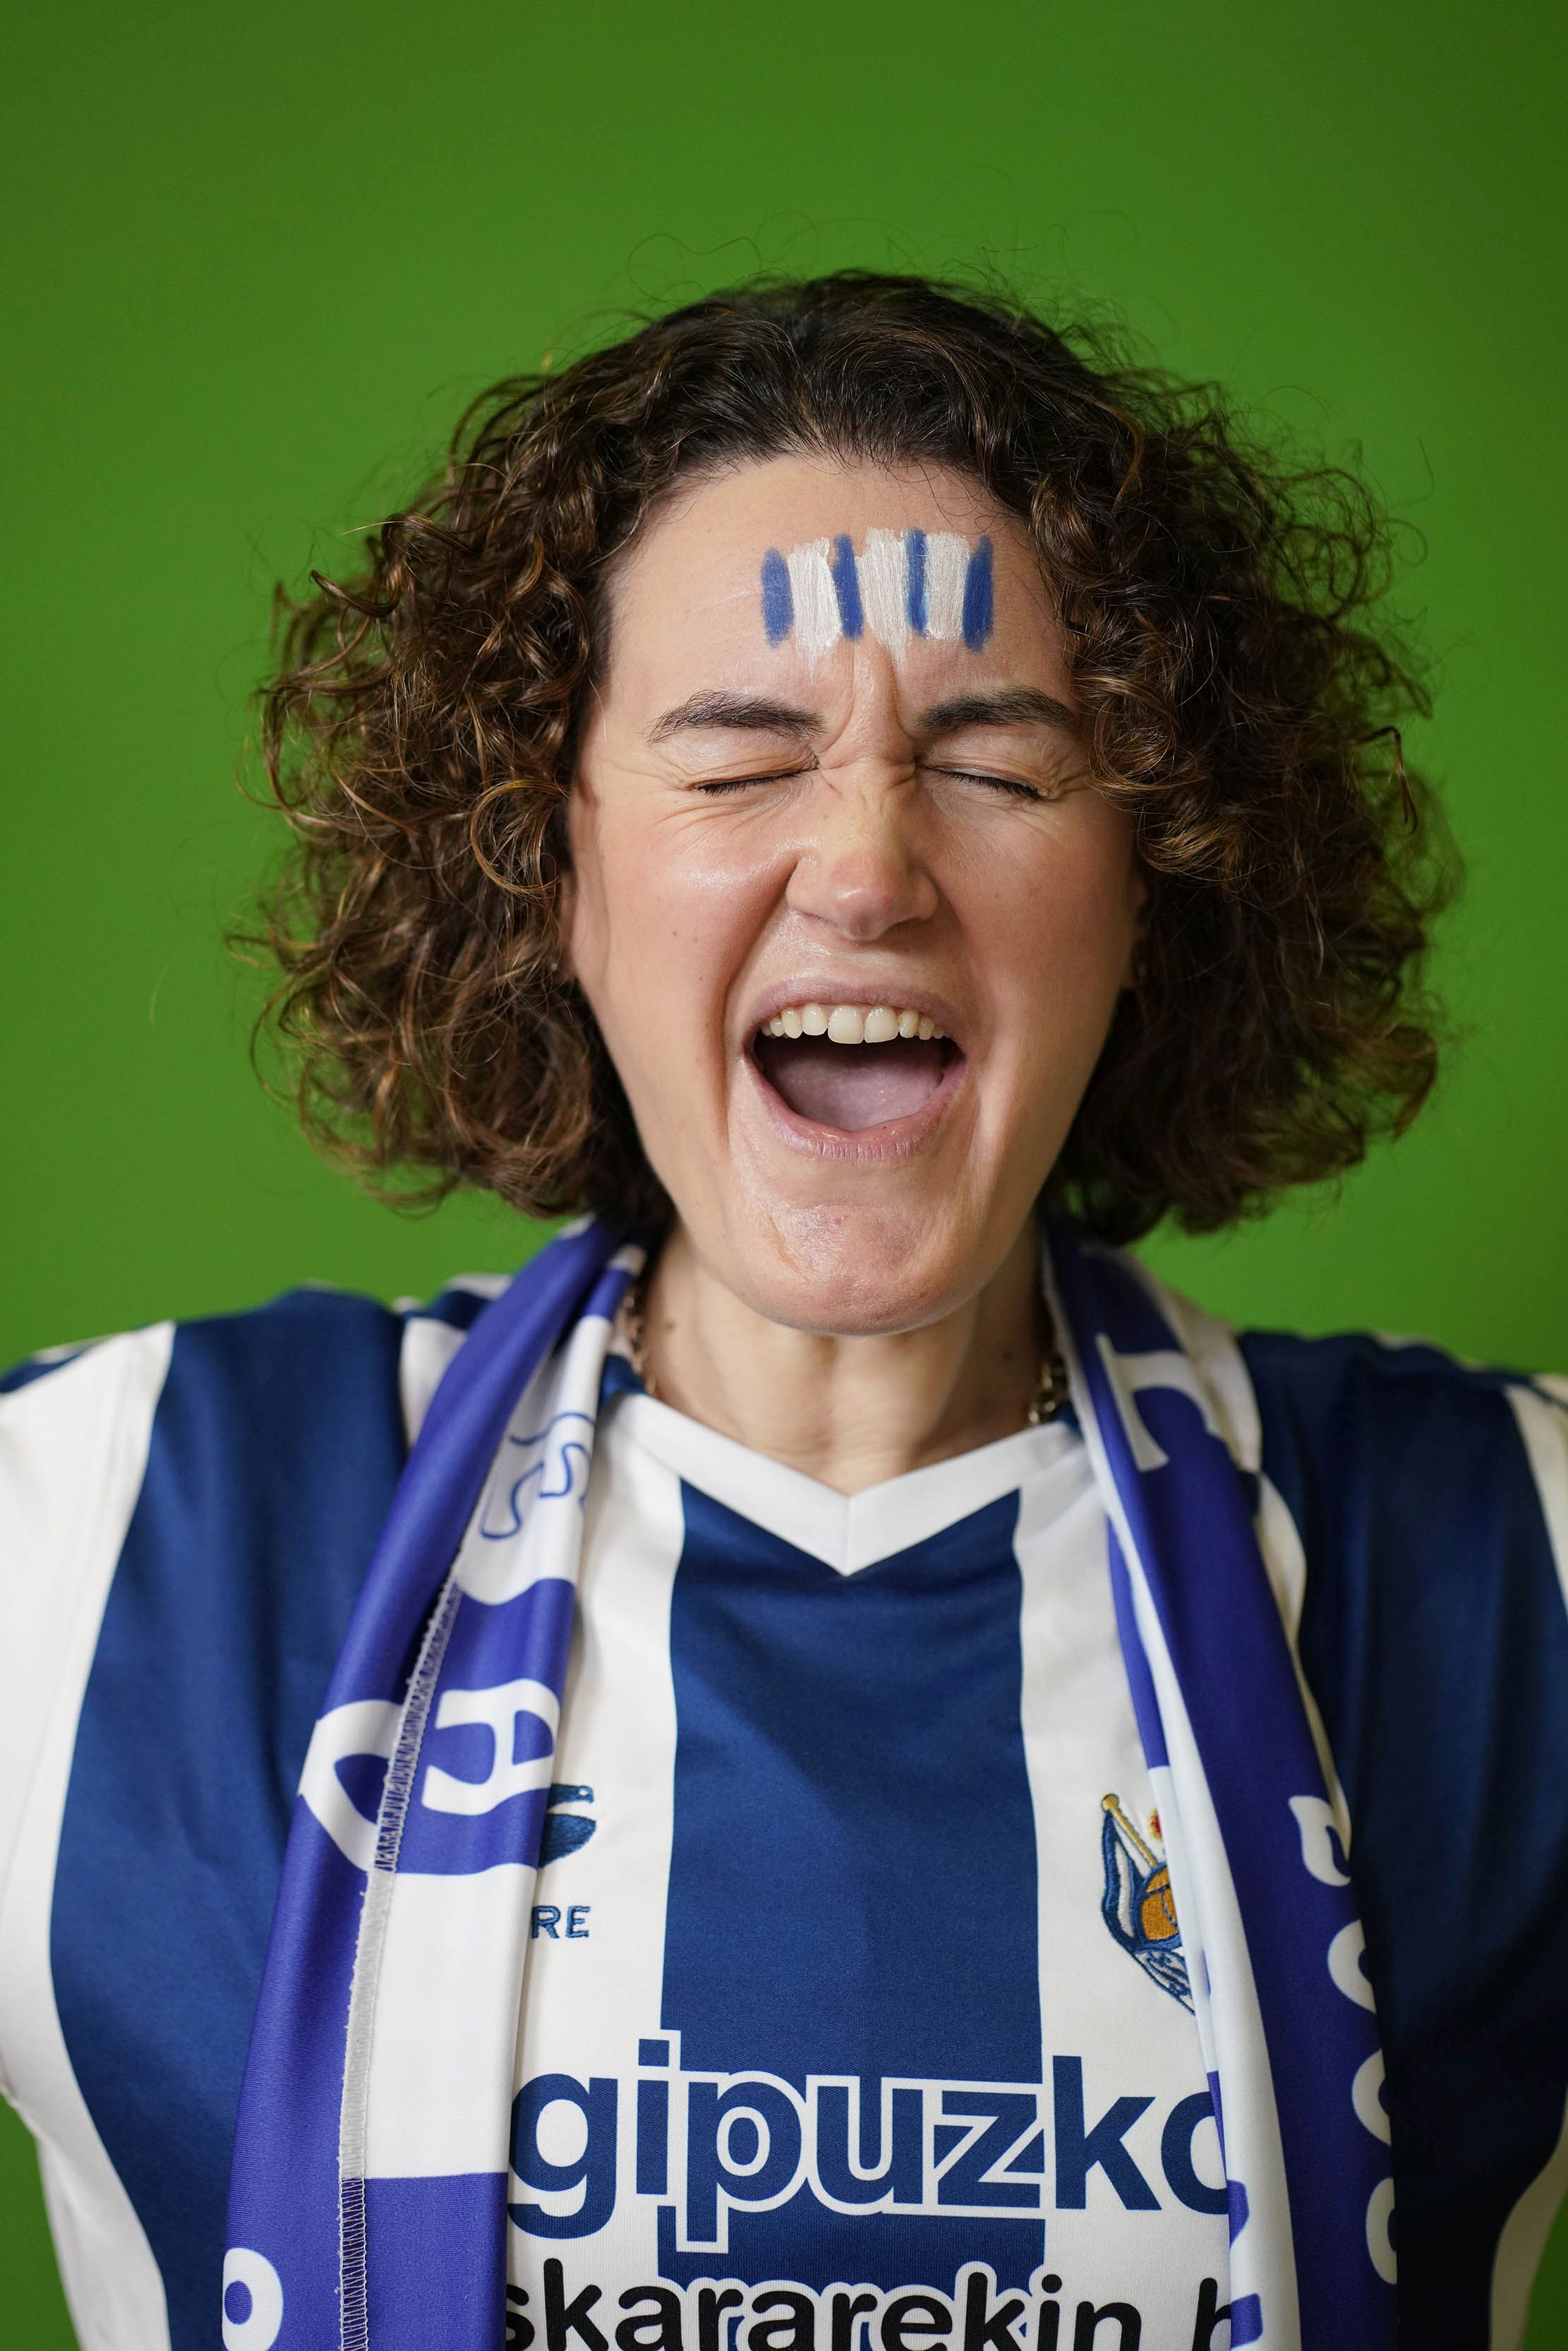 Fotos: Beti Erreala Taldea ya cuenta las horas para la gran final de Copa